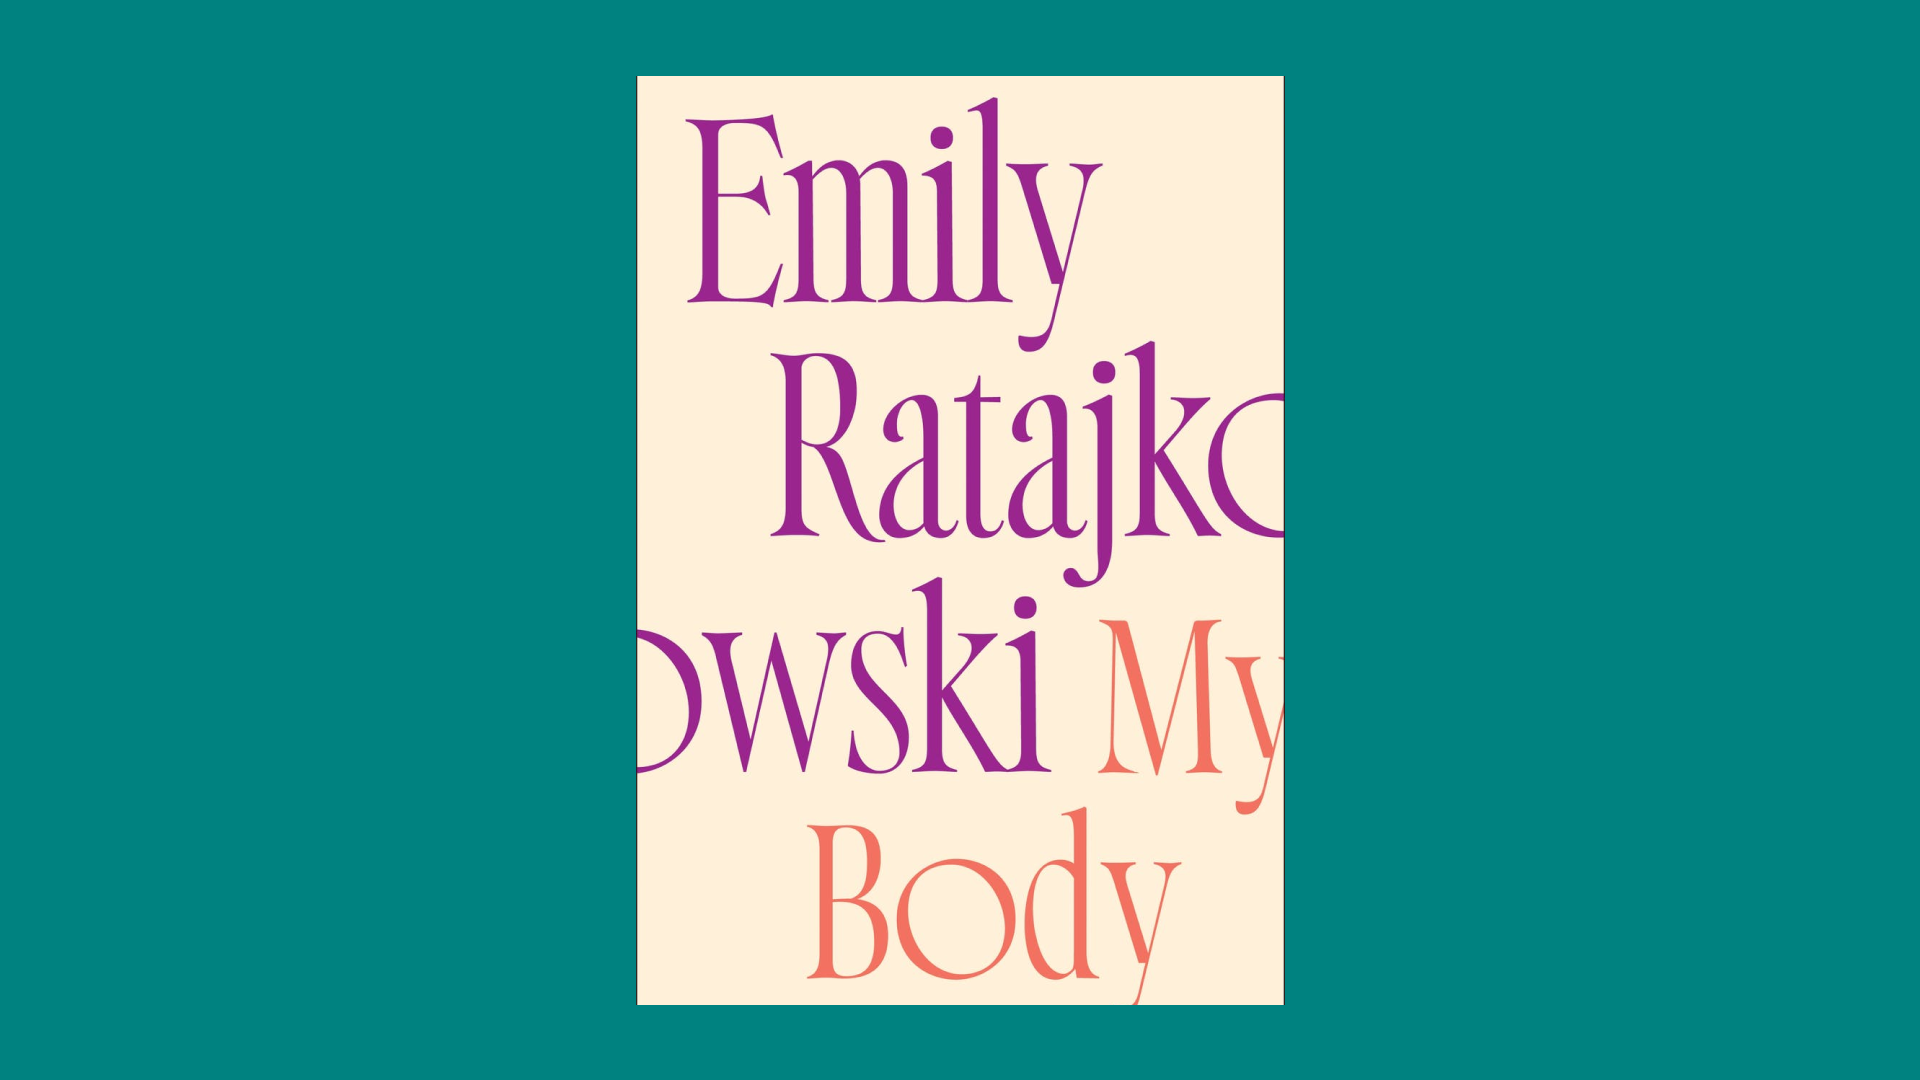 “My Body” by Emily Ratajkowski